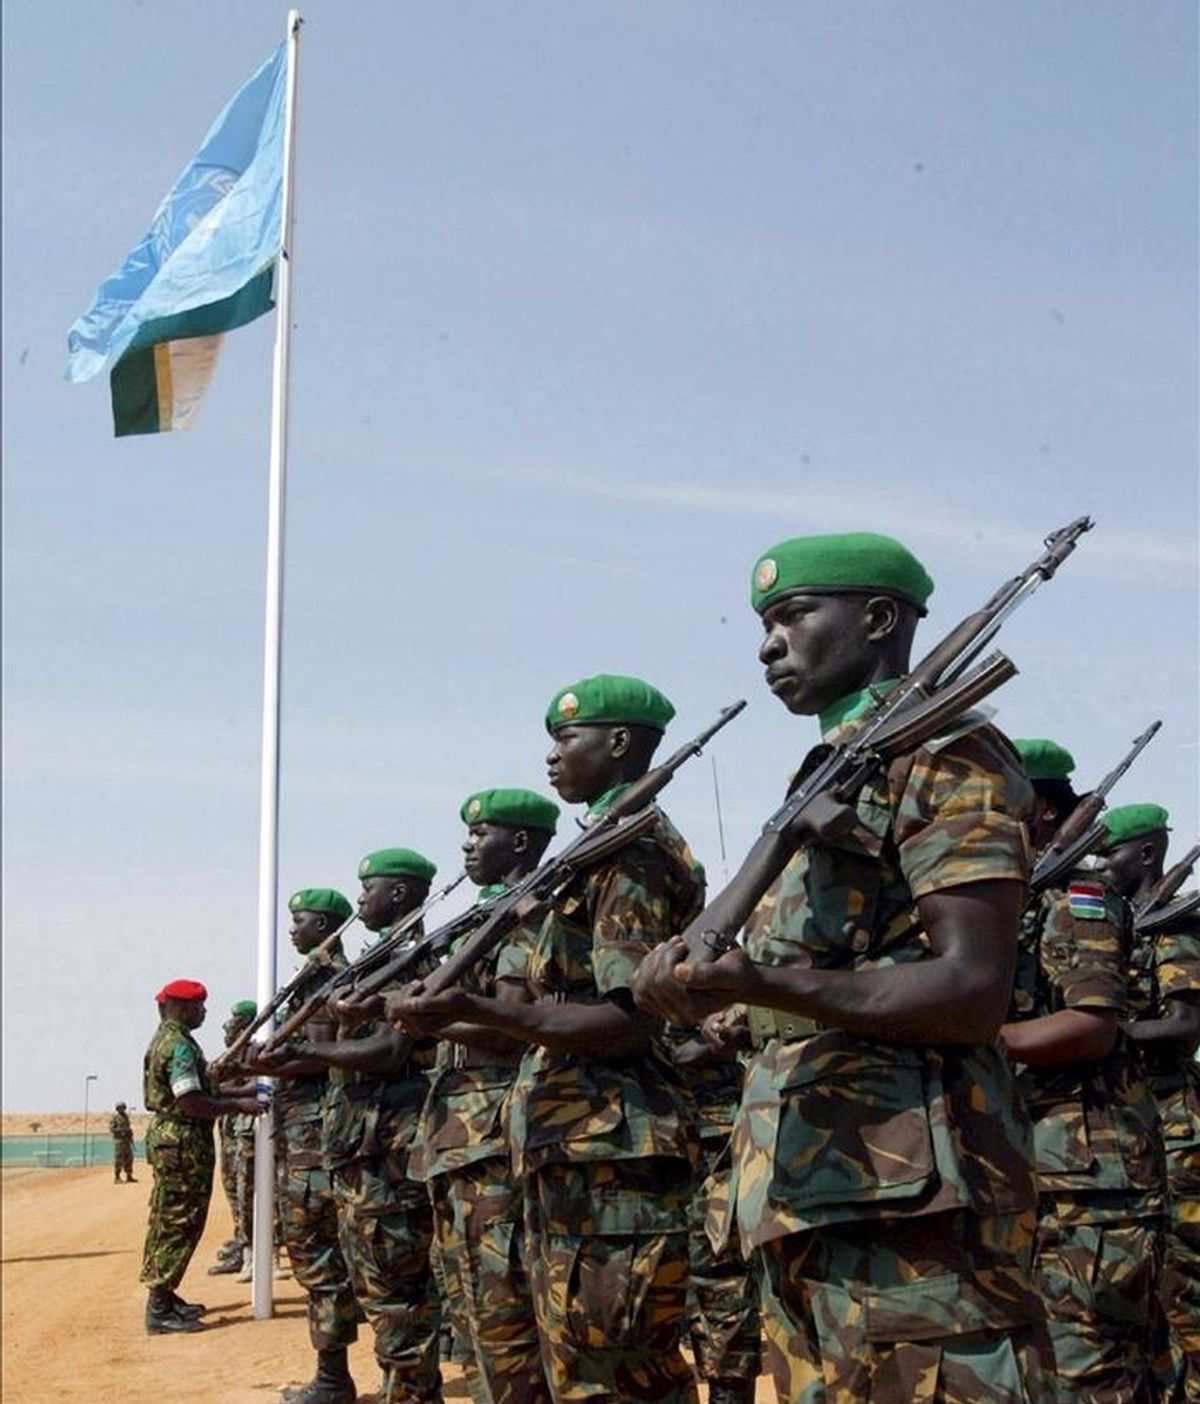 UNAMID tiene más de 17.700 soldados desplegados en Darfur, donde se calcula que han muerto más de 300.000 personas y otros dos millones y medio se han visto obligadas a abandonar sus hogares desde 2003. EFE/Archivo